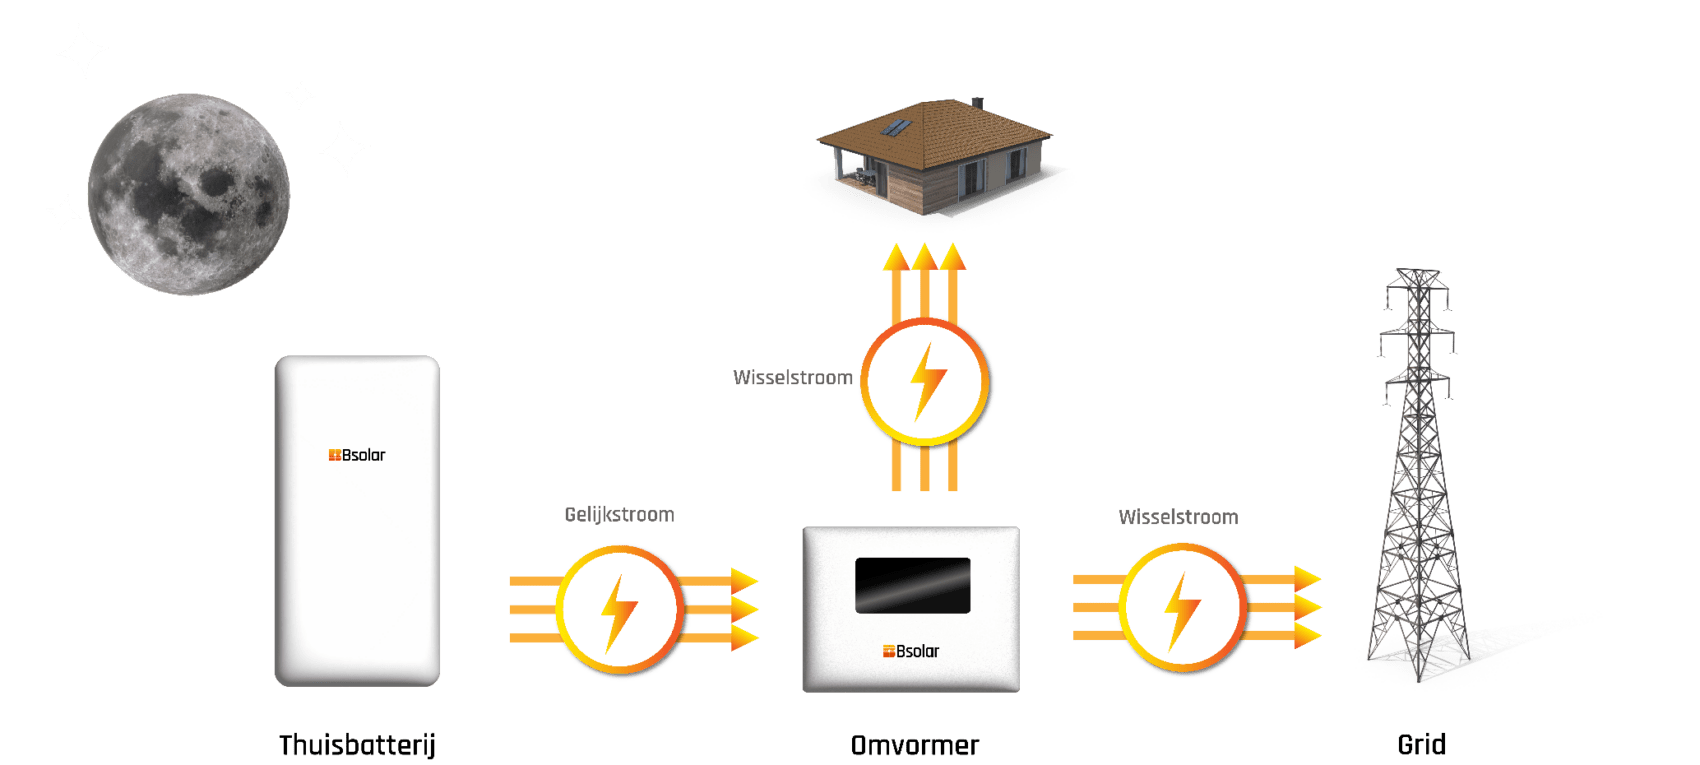 Afbeelding die de werking van thuisbatterijen in de nacht illustreert, waarbij Bsolar garant staat voor betrouwbare energieopslag en beschikbaarheid, zelfs wanneer de zon ondergaat.